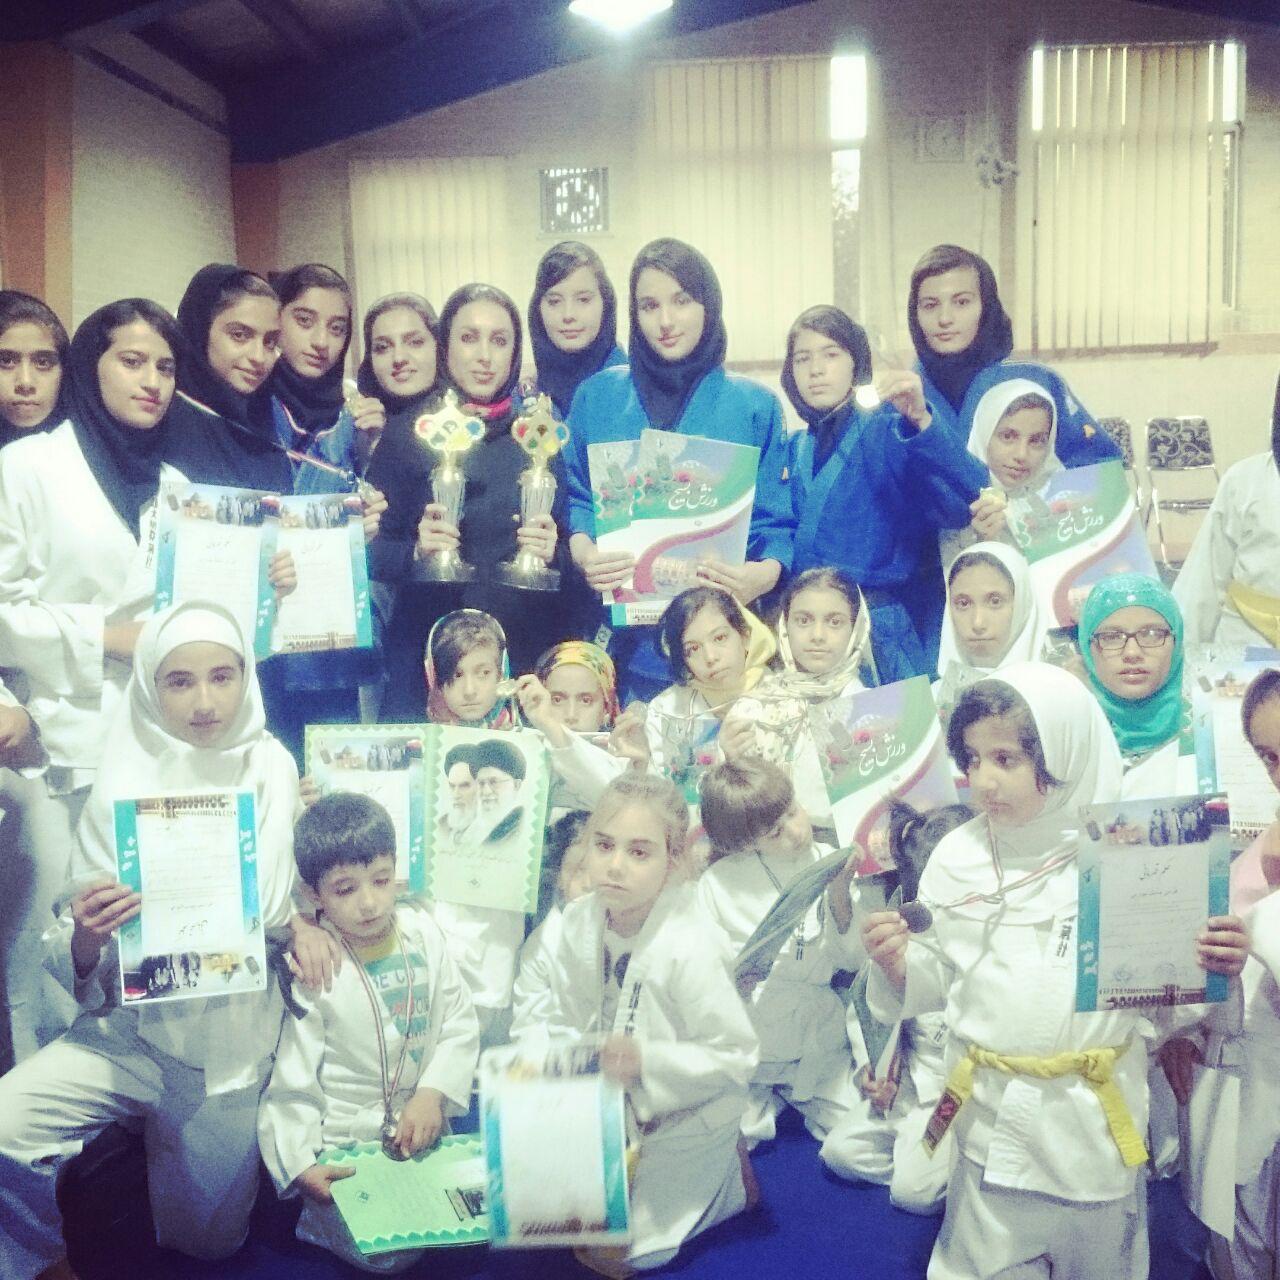 نایب قهرمانی دختران جودوکار نجف آباد در استان